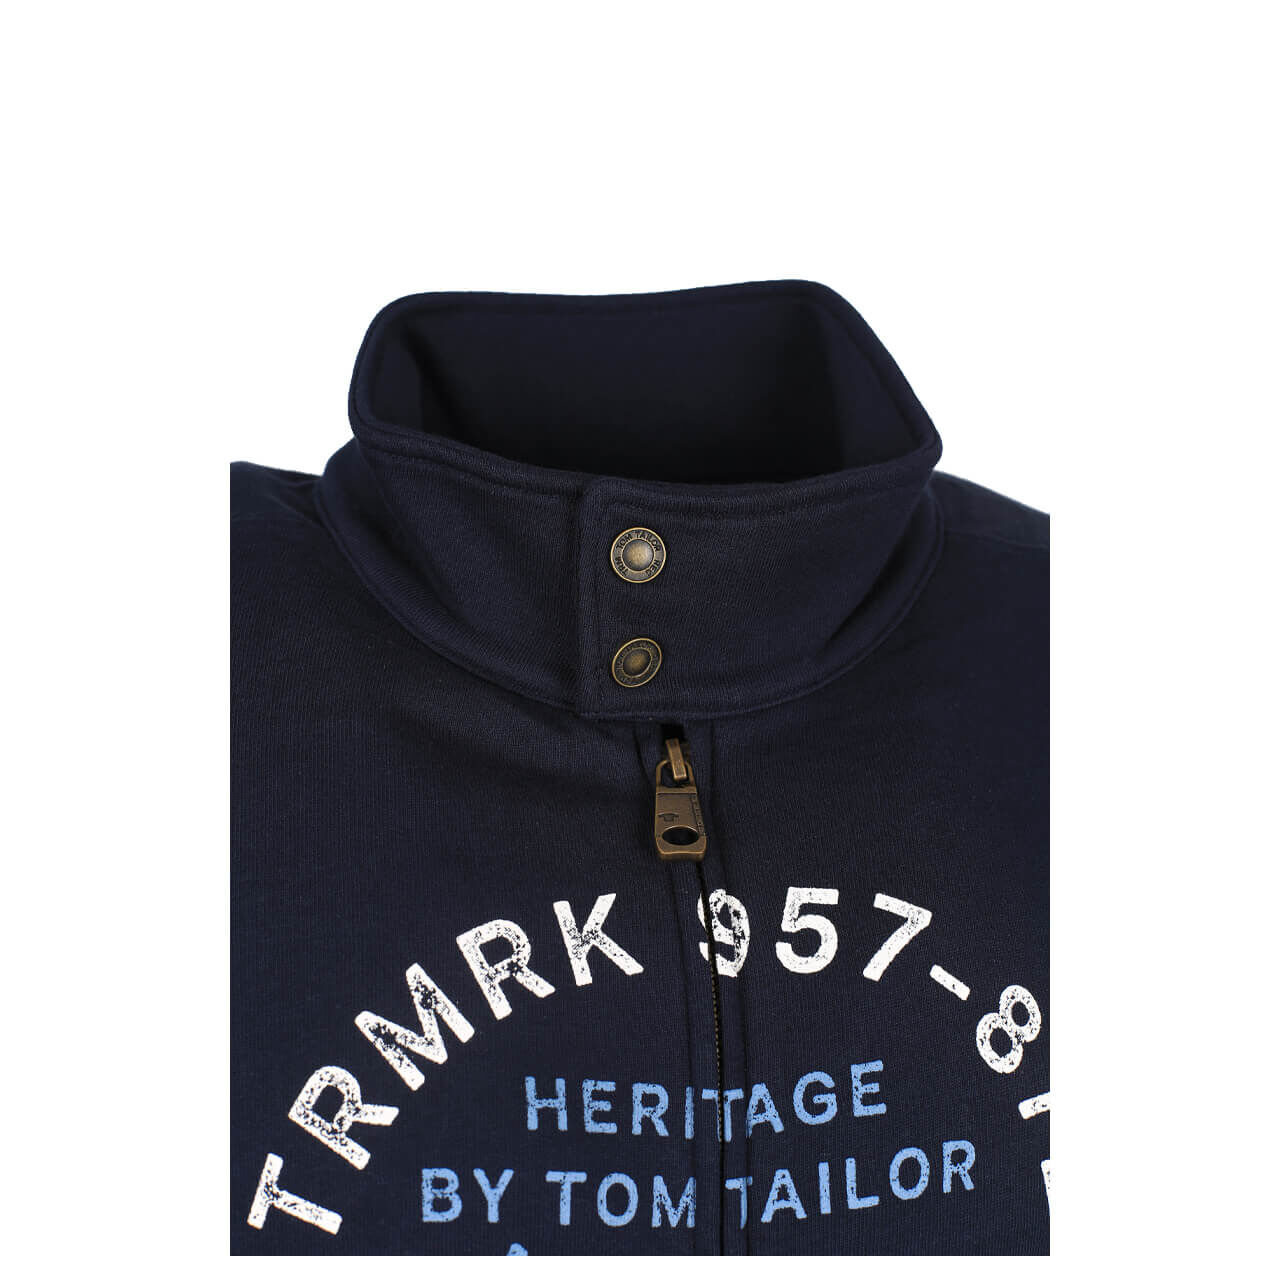 Tom Tailor Sweatjacke für Herren in Dunkelblau, FarbNr.: 10668